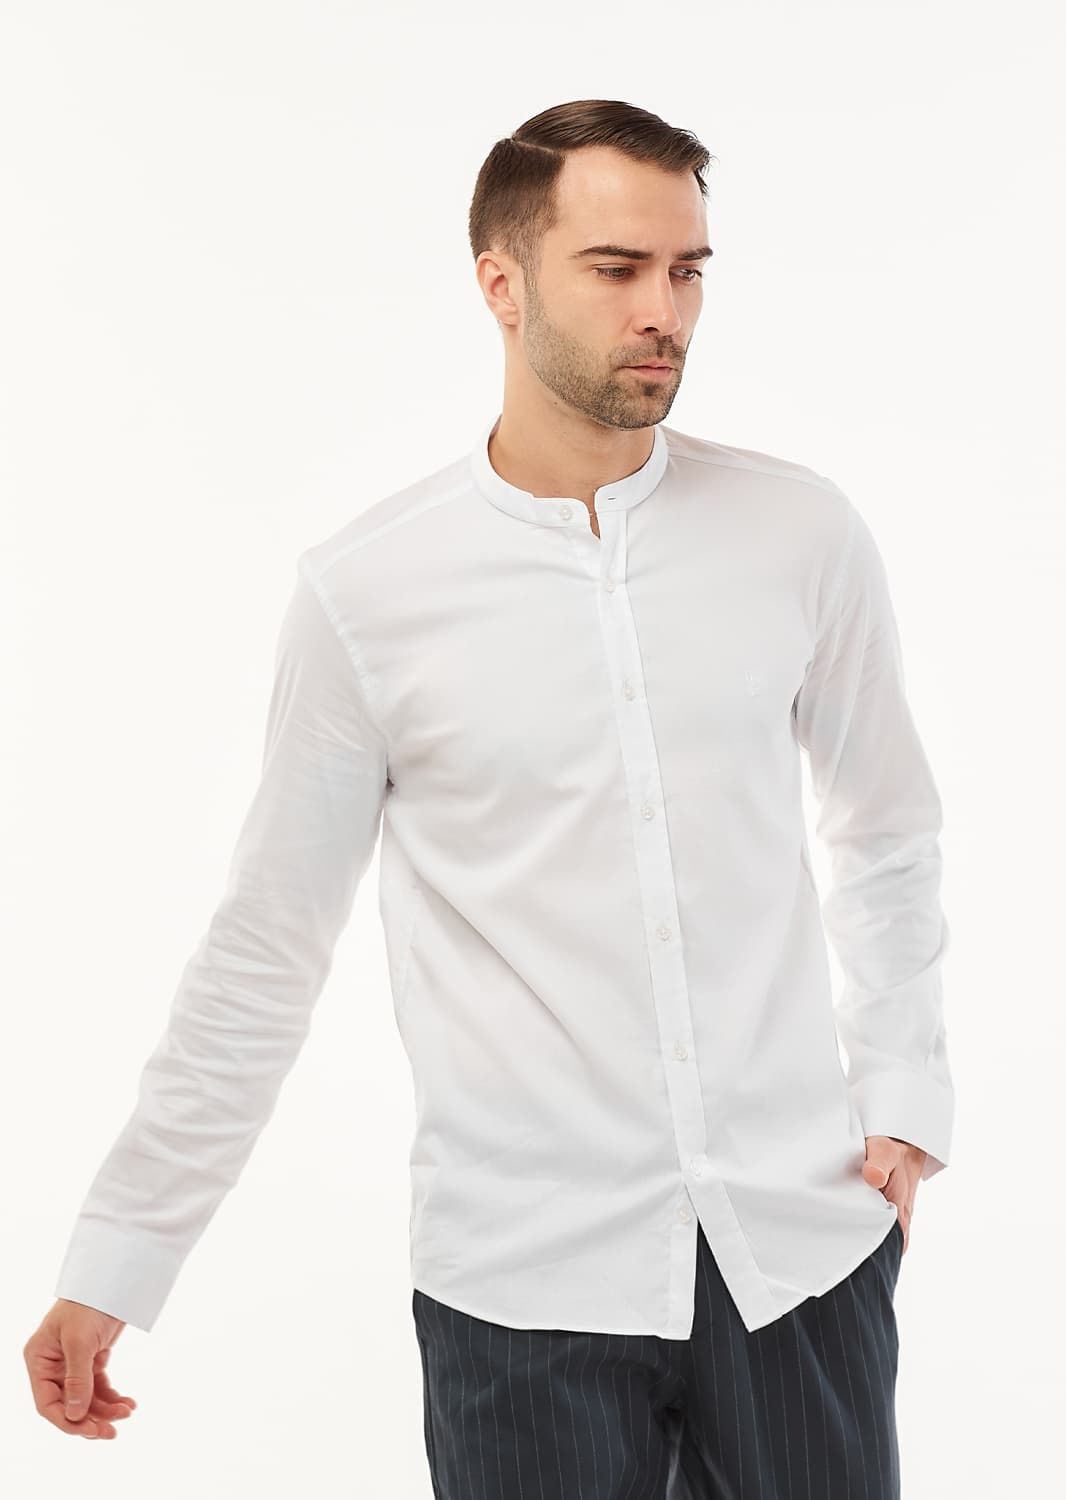 Рубашка мужская белая воротник со стойкой (44)